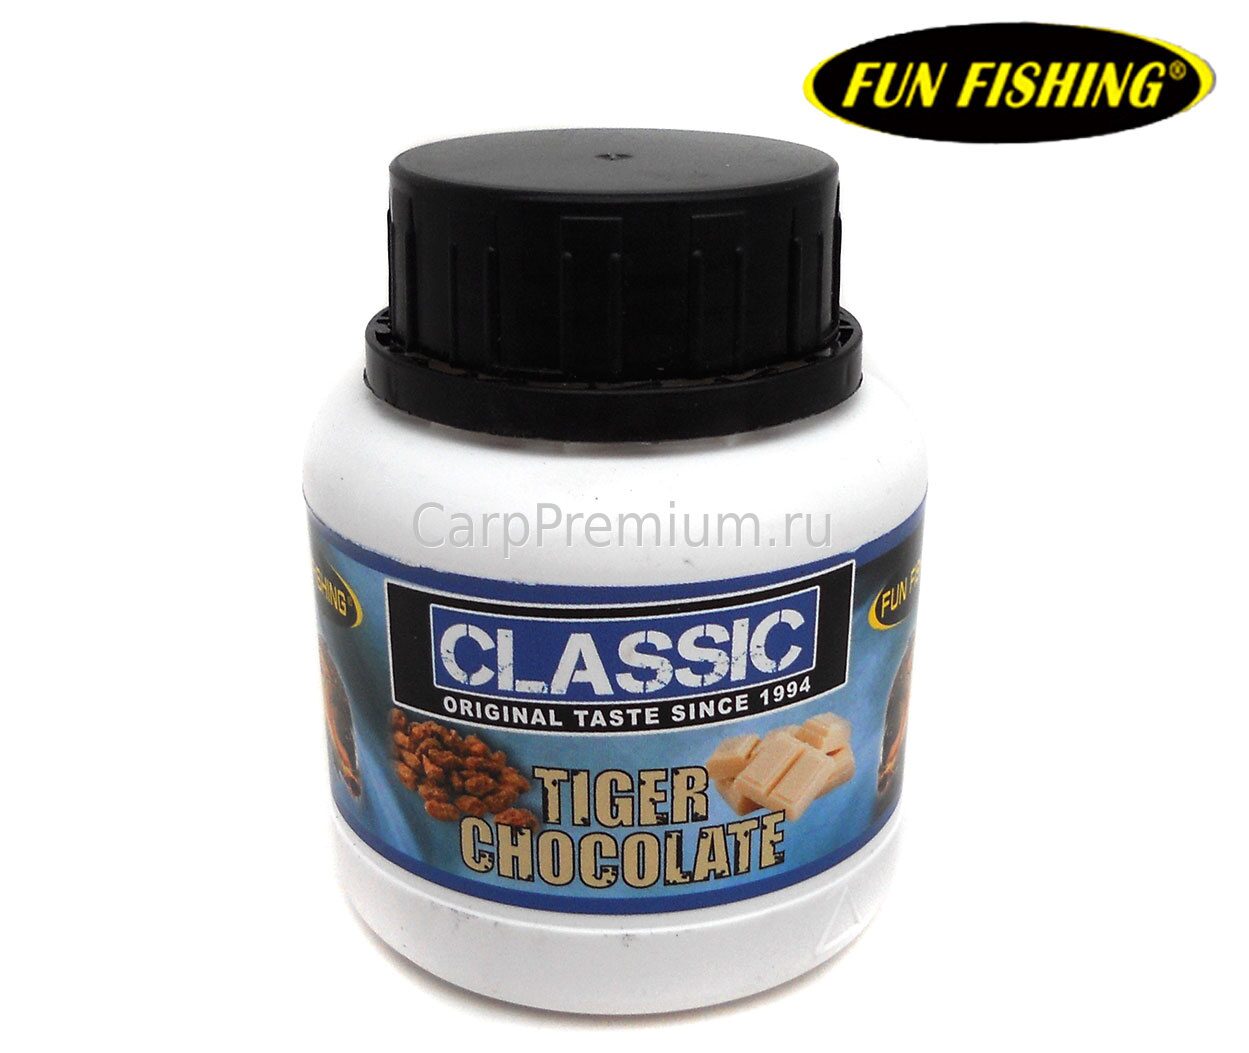 Дип Тигровый шоколад Fun Fishing (Фан Фишинг) - Booster Classic (серия Классик) Tiger Chocolate, 100 мл